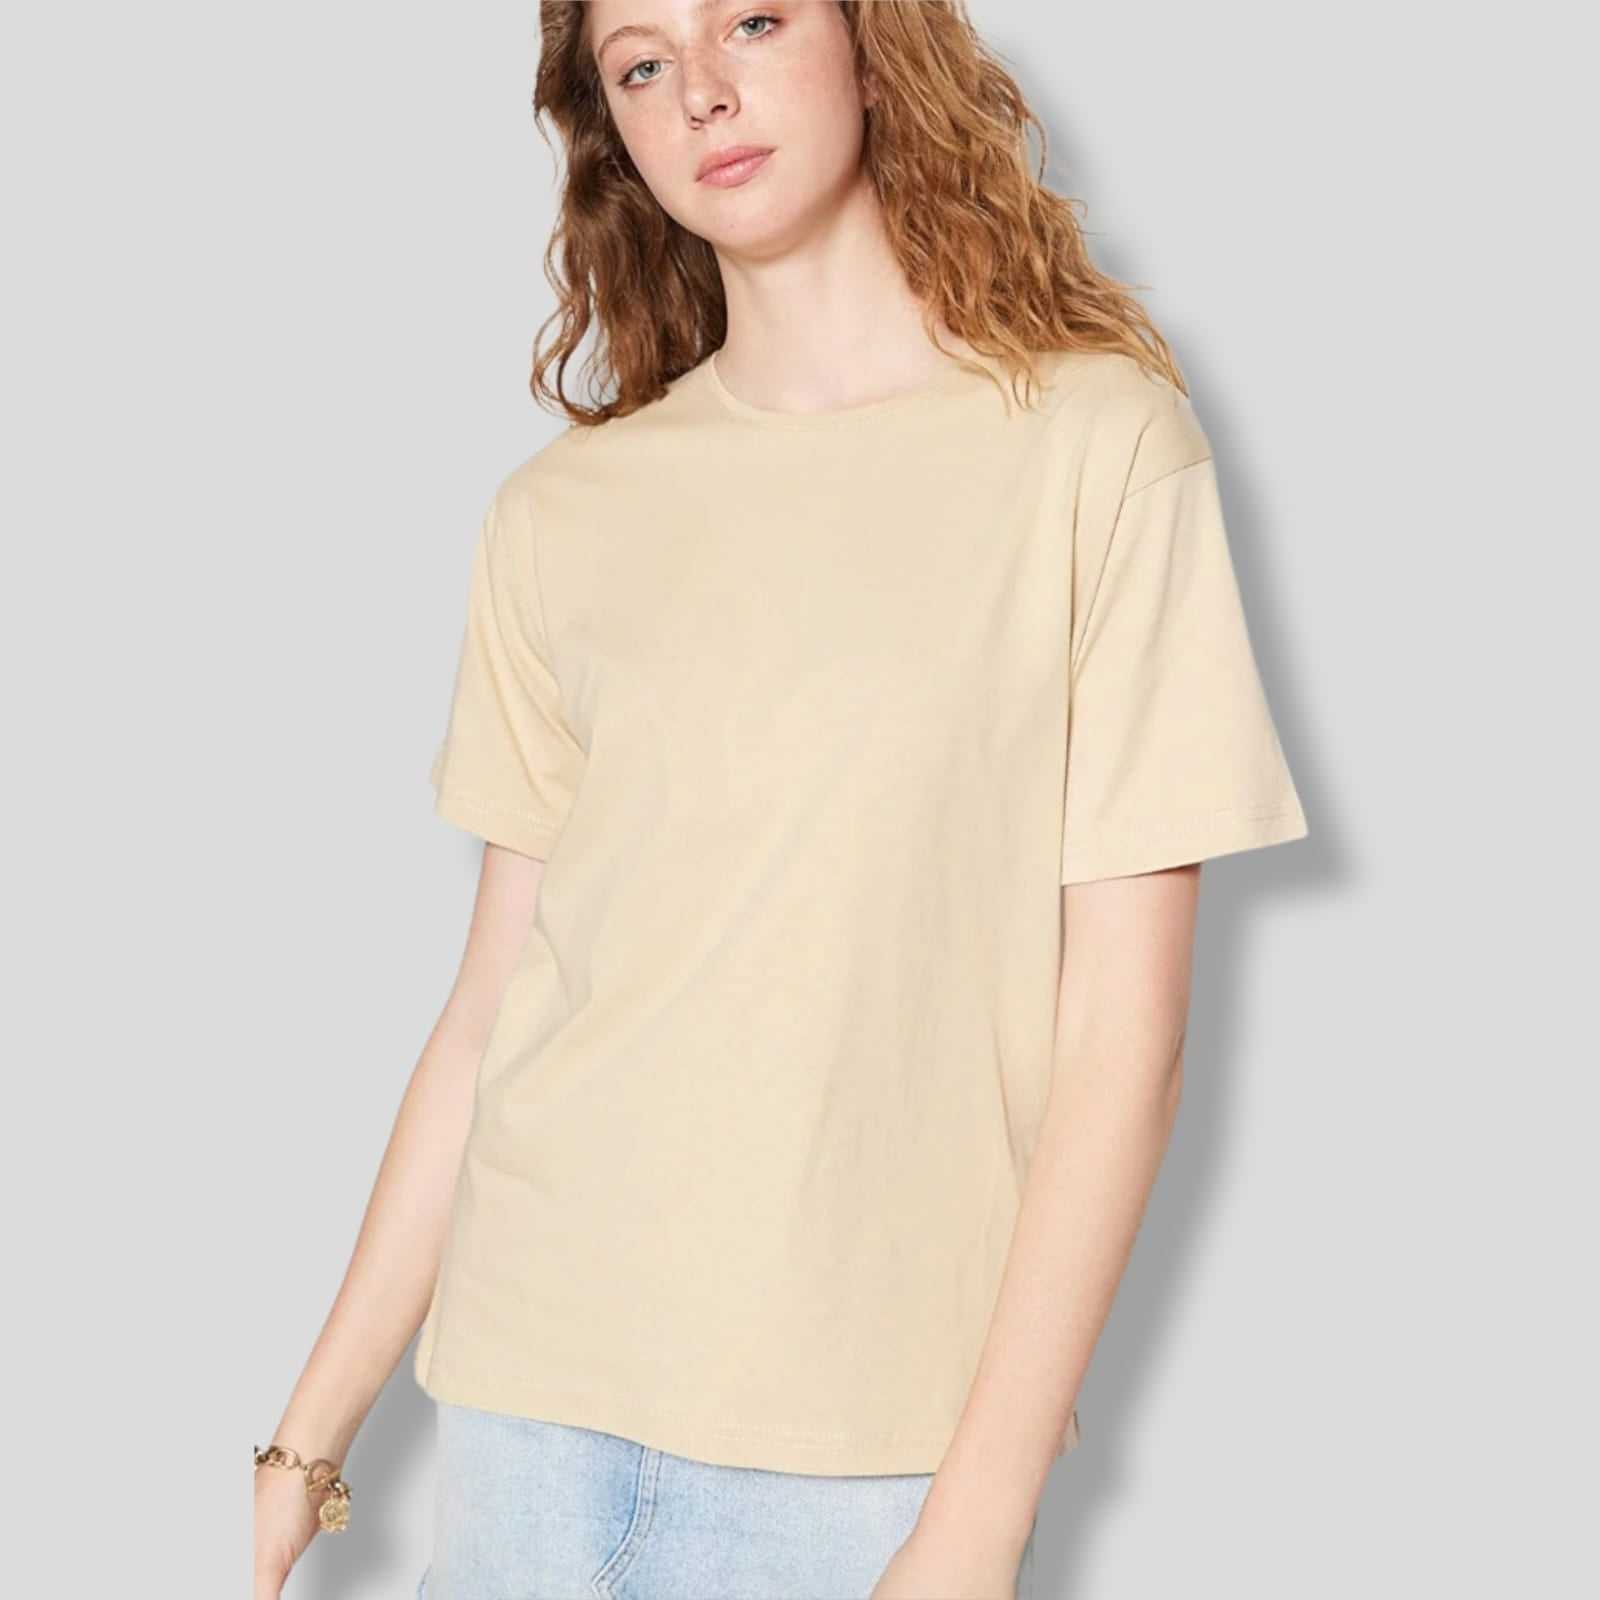 T-shirtT-Shirt TrendyolTrendyolT-Shirt Trendyol vjen me një model vërtet të veçant. Një ngjyrëshe (bezhë) dhe me prerje të thjeshtë. Komod falë materialit me cilësi te lartë.